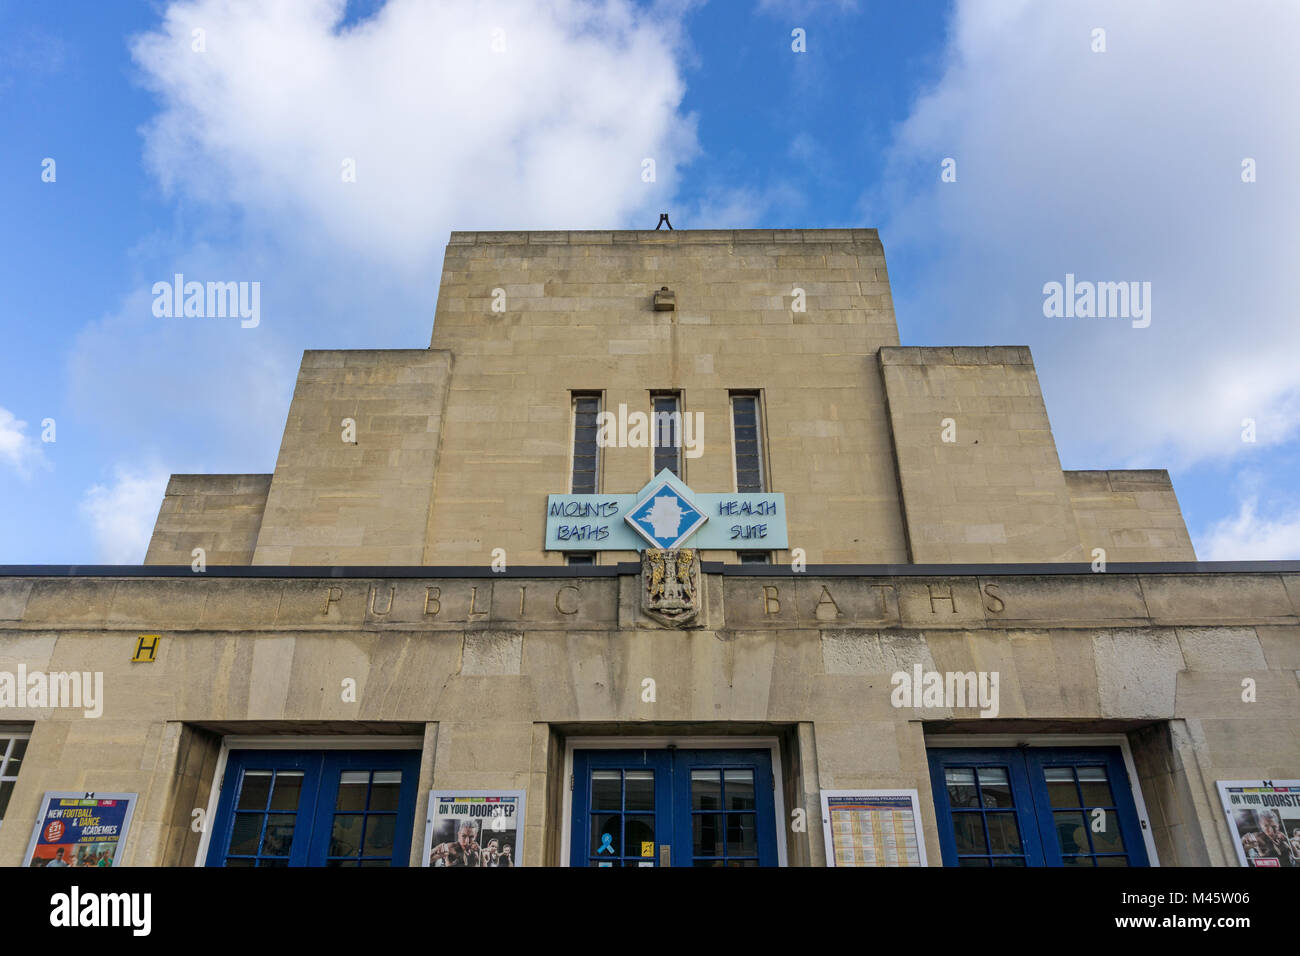 La fachada de estilo Art Deco de los montajes de los baños, Northampton, Reino Unido; reconocido por Inglaterra histórica como un buen ejemplo de un movimiento moderno piscina Foto de stock